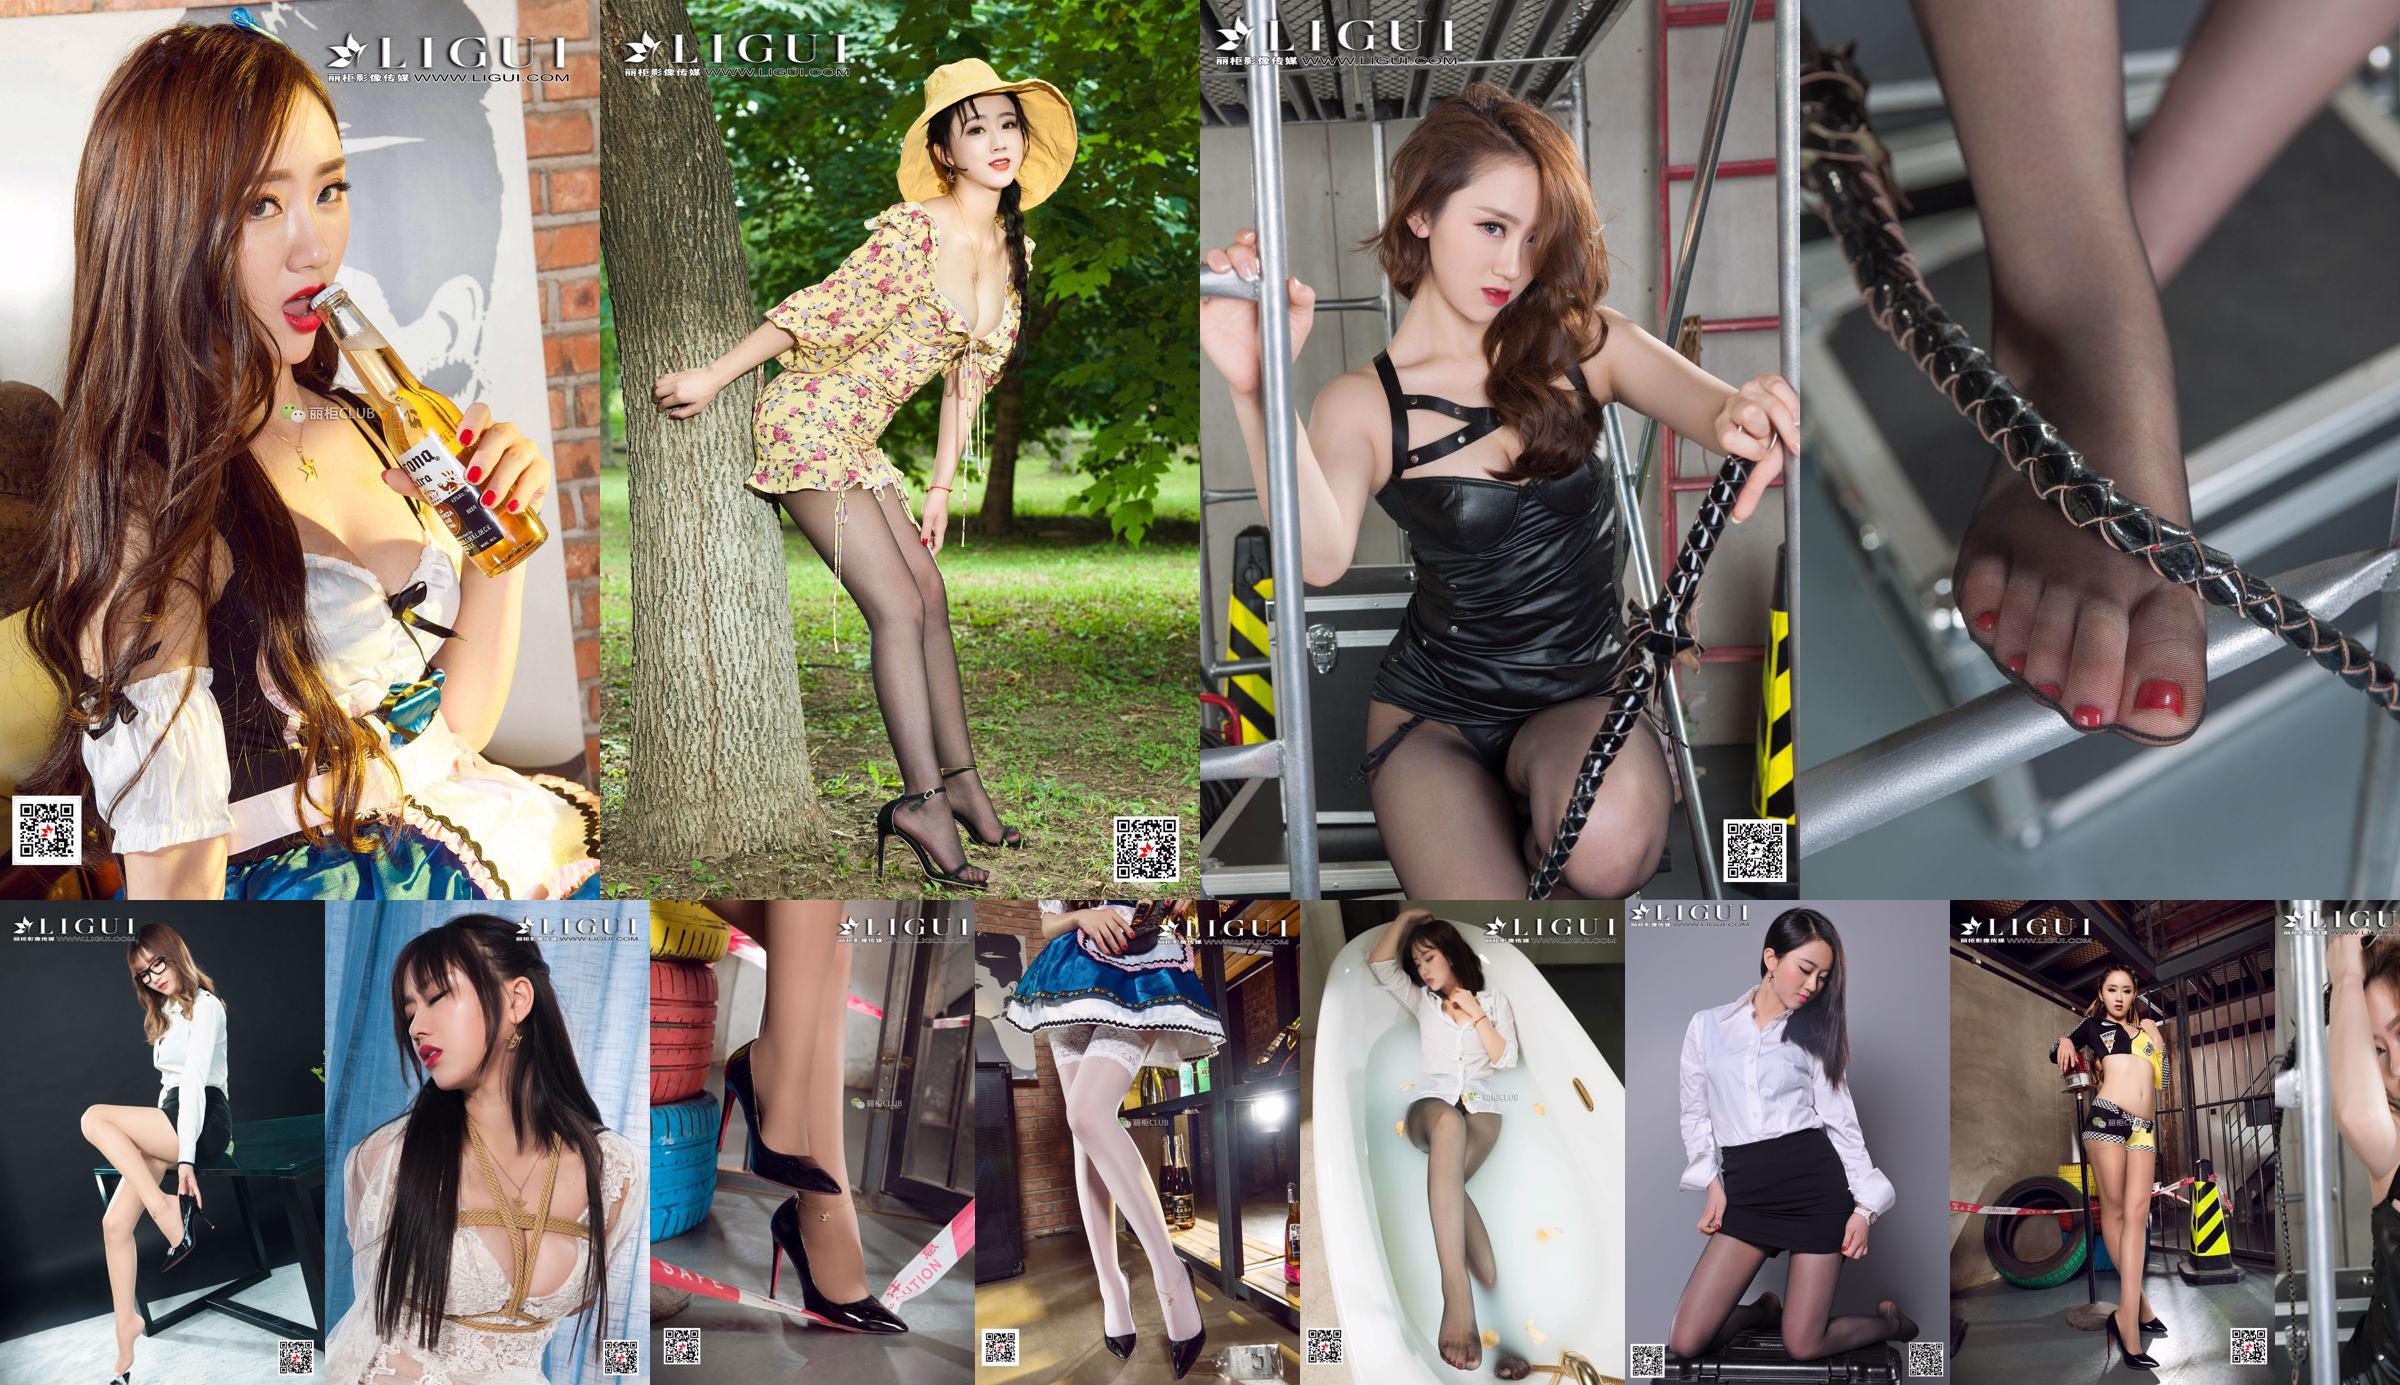 Model Ranran "Professional Wear Black Silky High Heels" Karya Lengkap [丽 柜 LiGui] Foto kaki indah dan kaki giok No.6f4cd0 Halaman 1